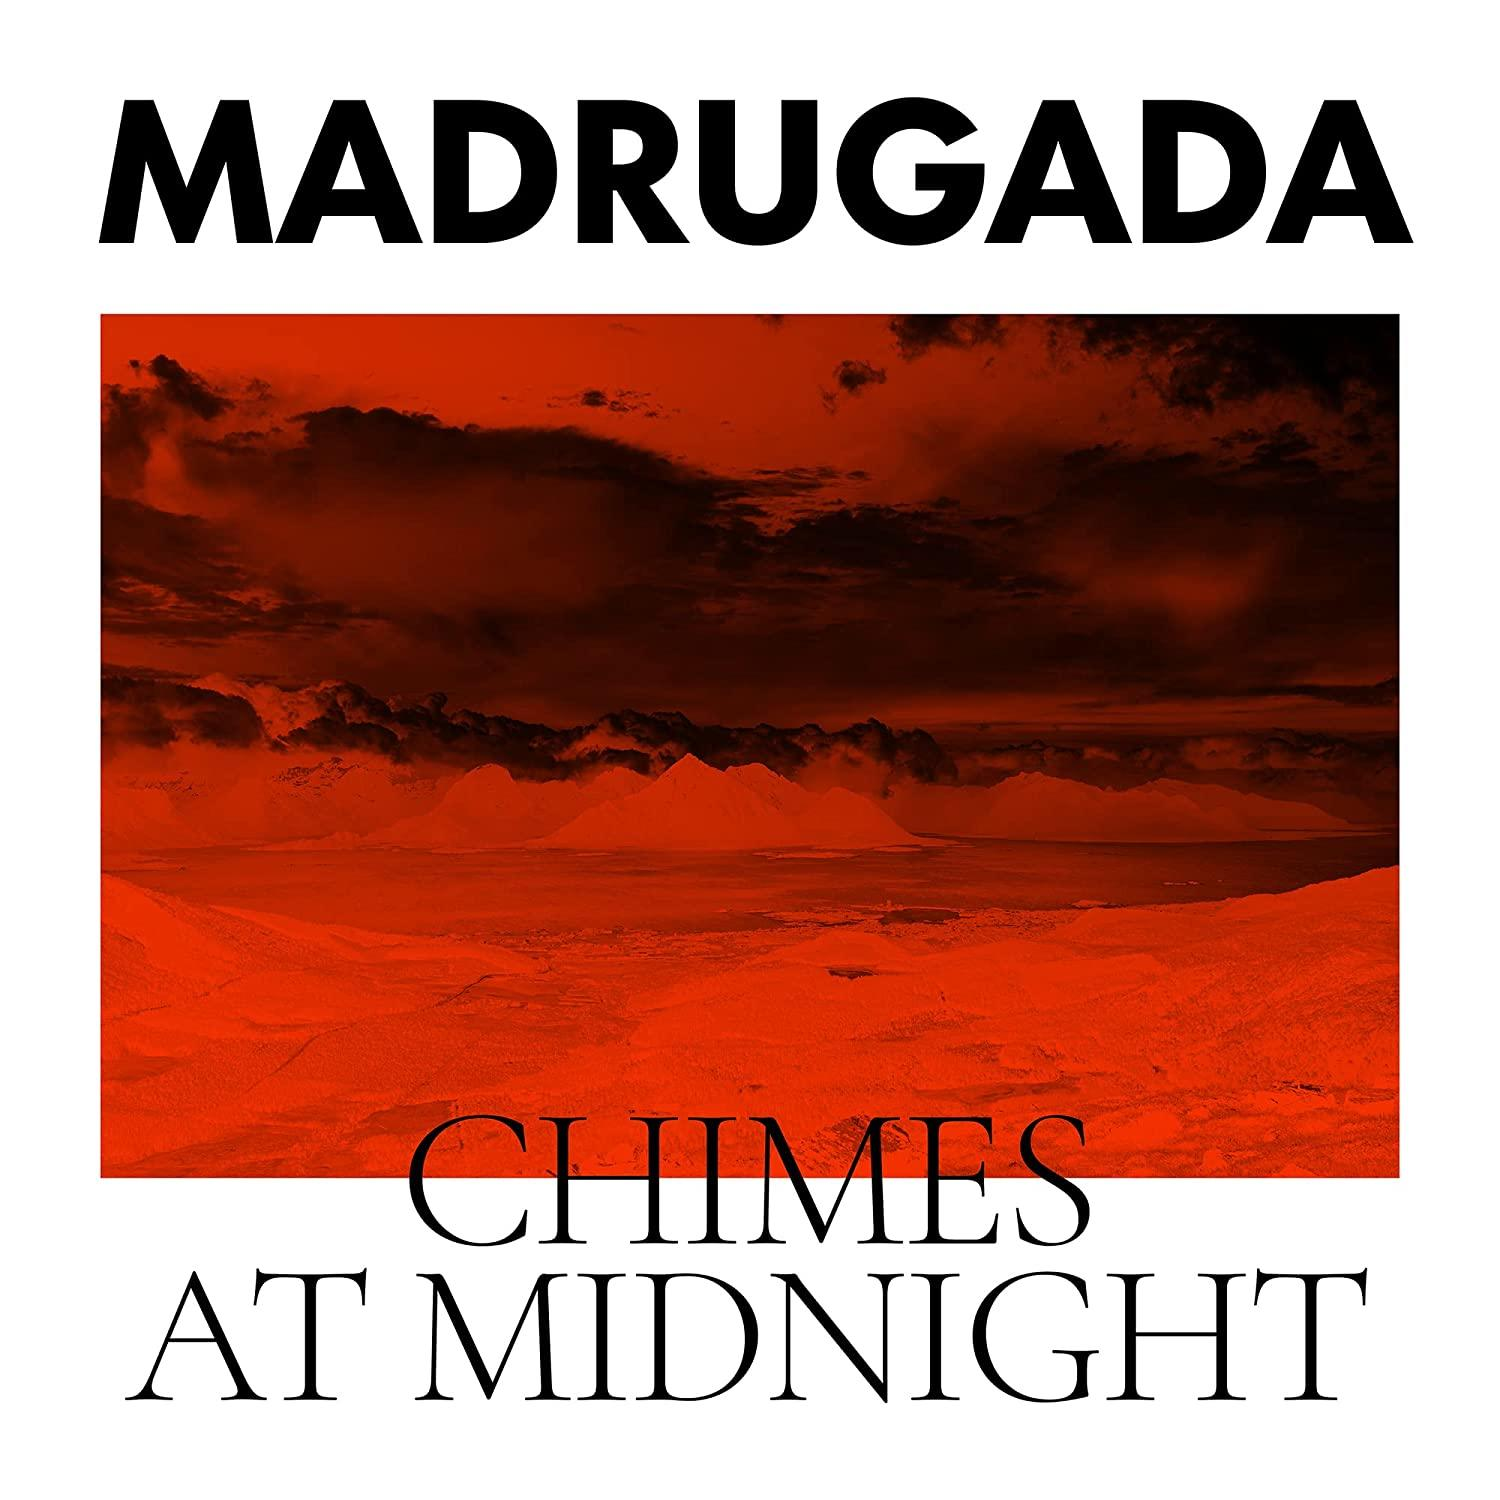 - Madrugada Chimes (Vinyl) Midnight - At